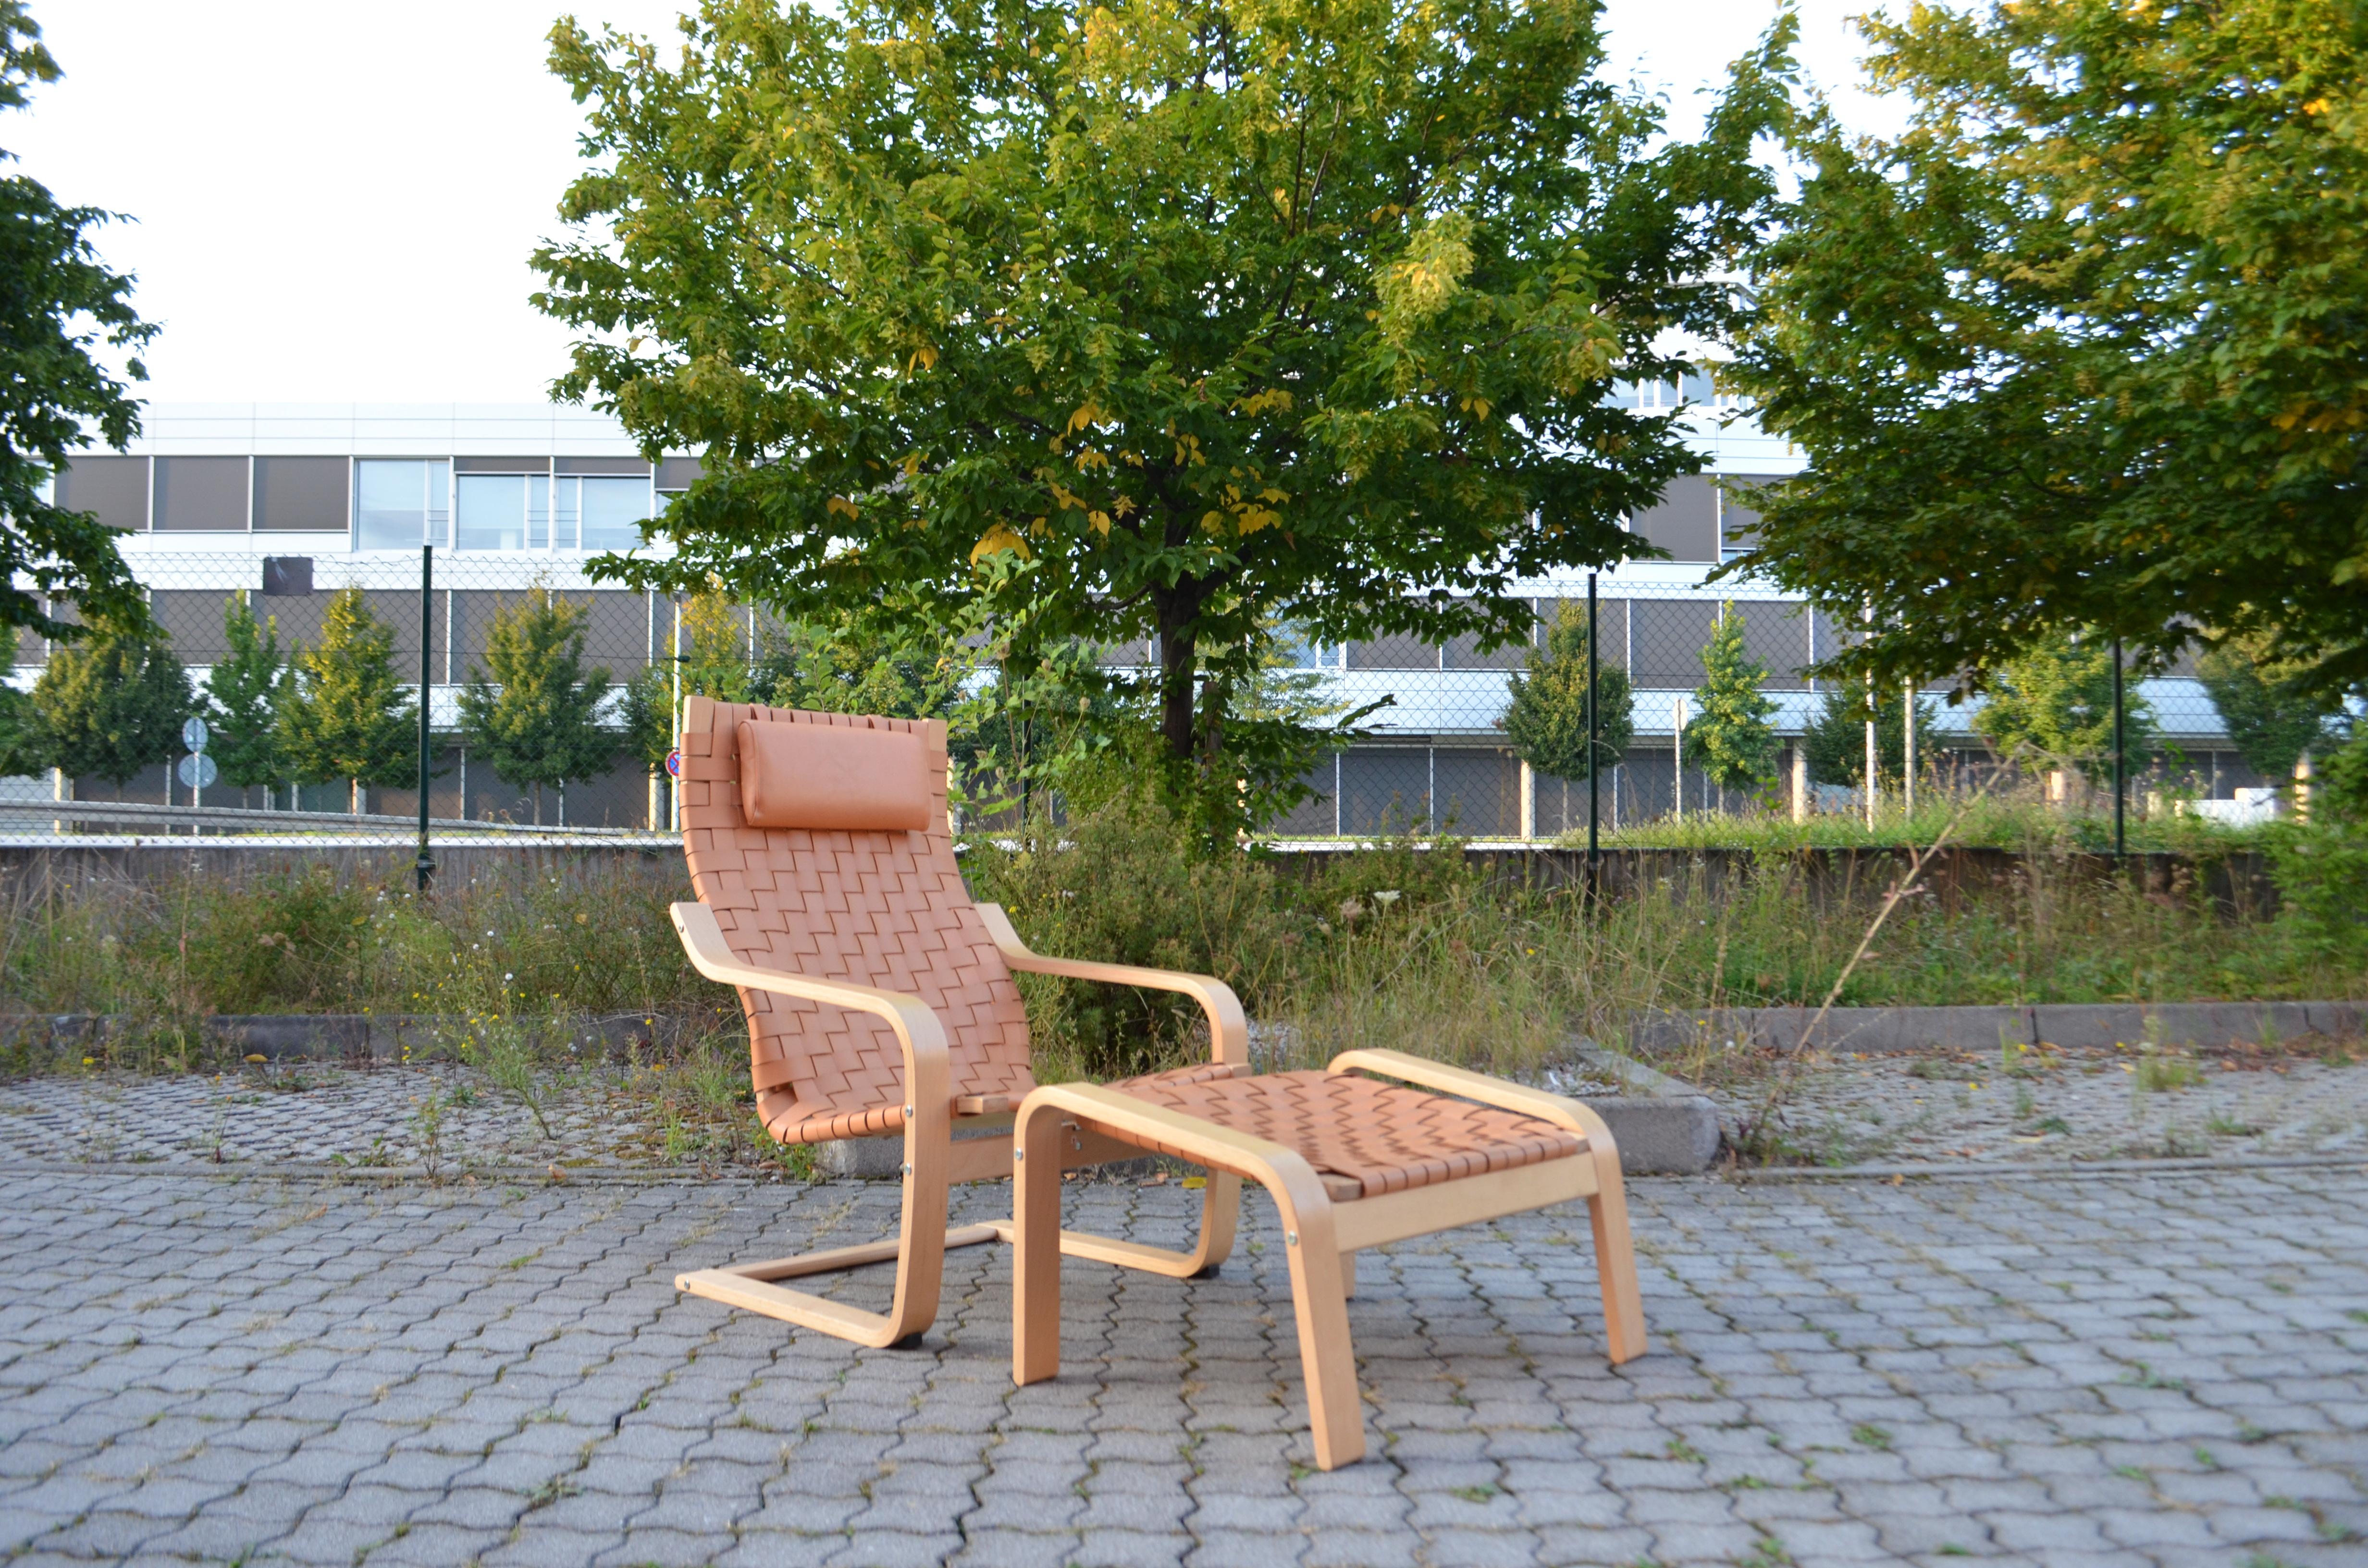 Das Ikea Cantilever Modell Poäng ist ein Klassiker. 
Er wurde 1977 von Noboru Nakamura für den schwedischen Möbelgiganten IKEA entworfen.
Zuerst hieß es Poem und wurde dann 1992 in Poäng geändert.
Die geschwungenen Linien und das dampfende